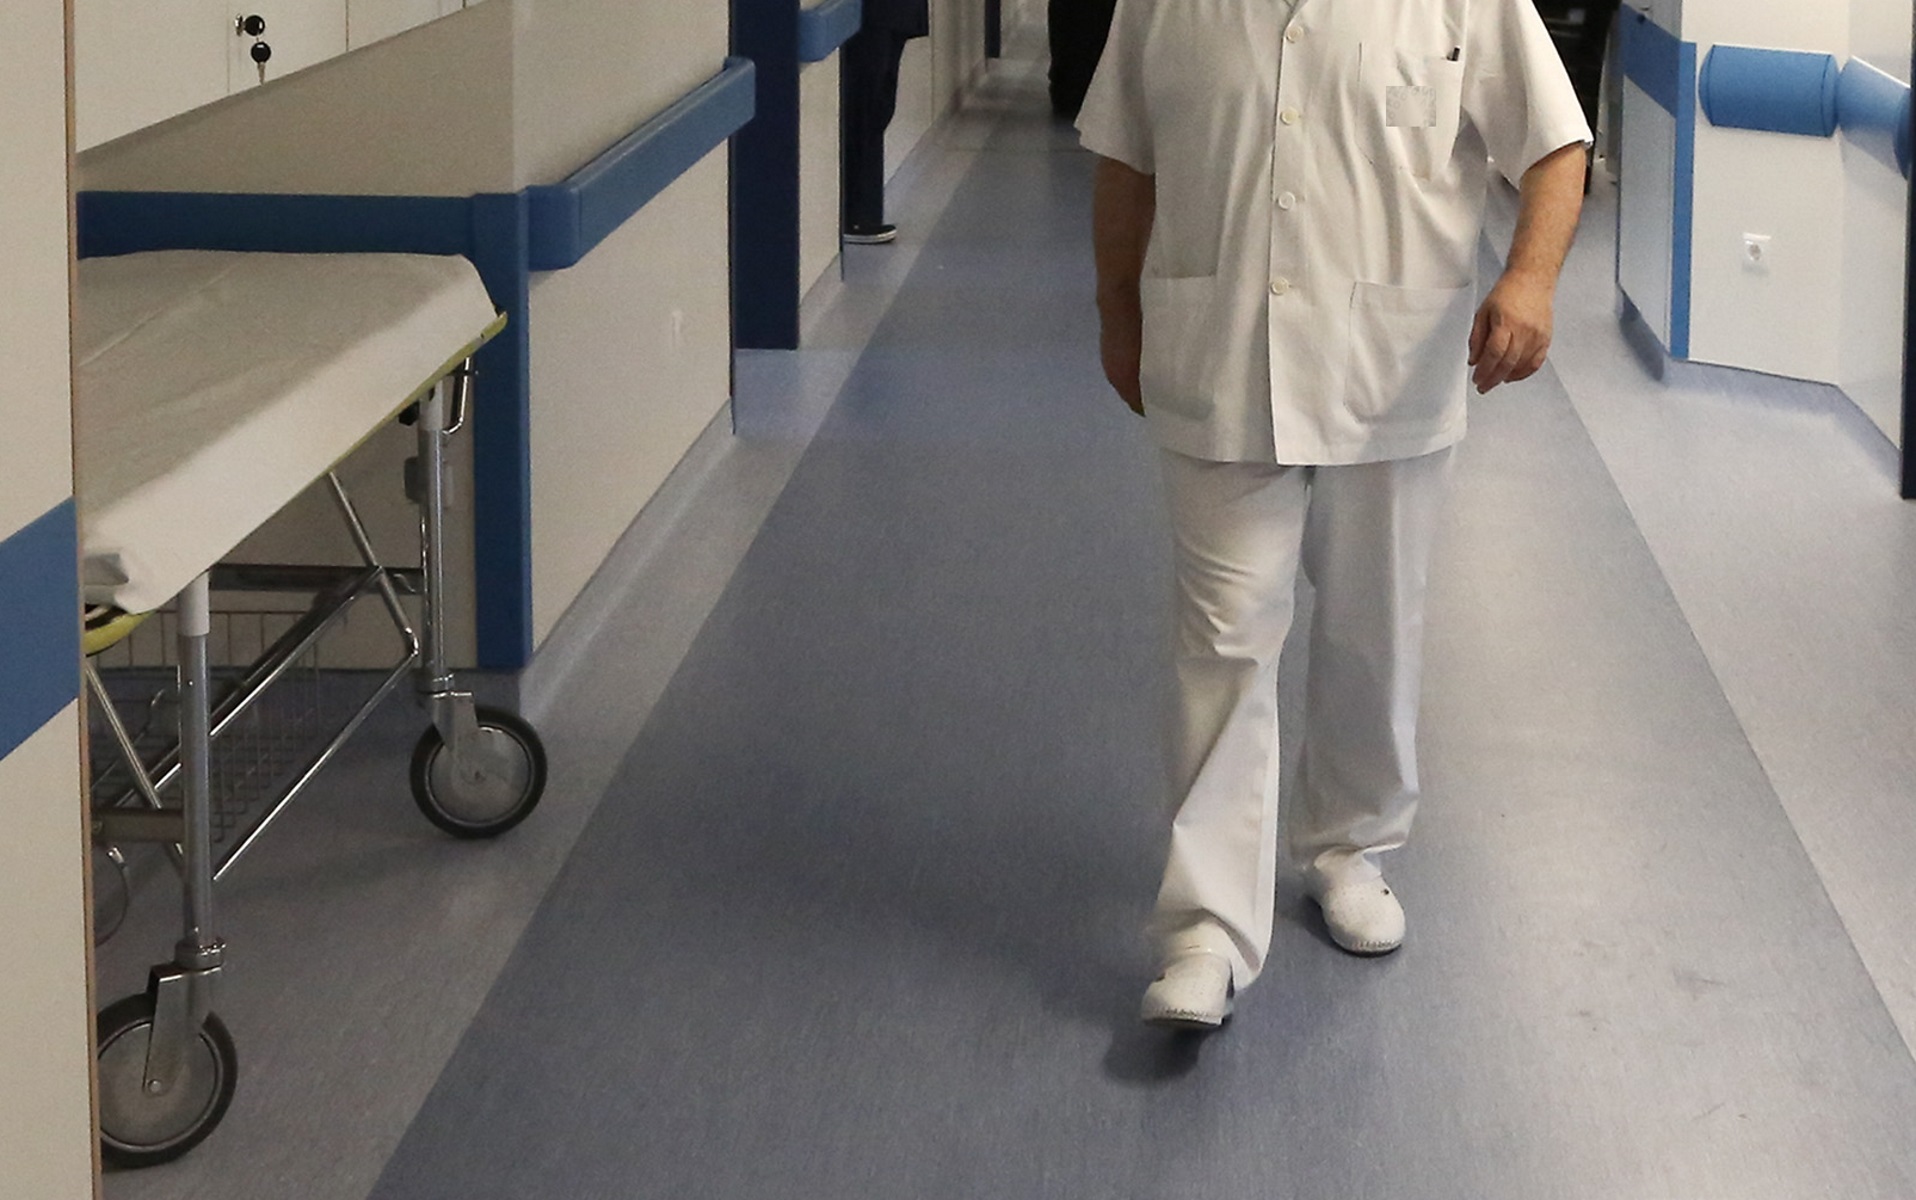 Λευτέρης Χαψιάδης: Στο νοσοκομείο μετά από ατύχημα ο στιχουργός των μεγάλων επιτυχιών